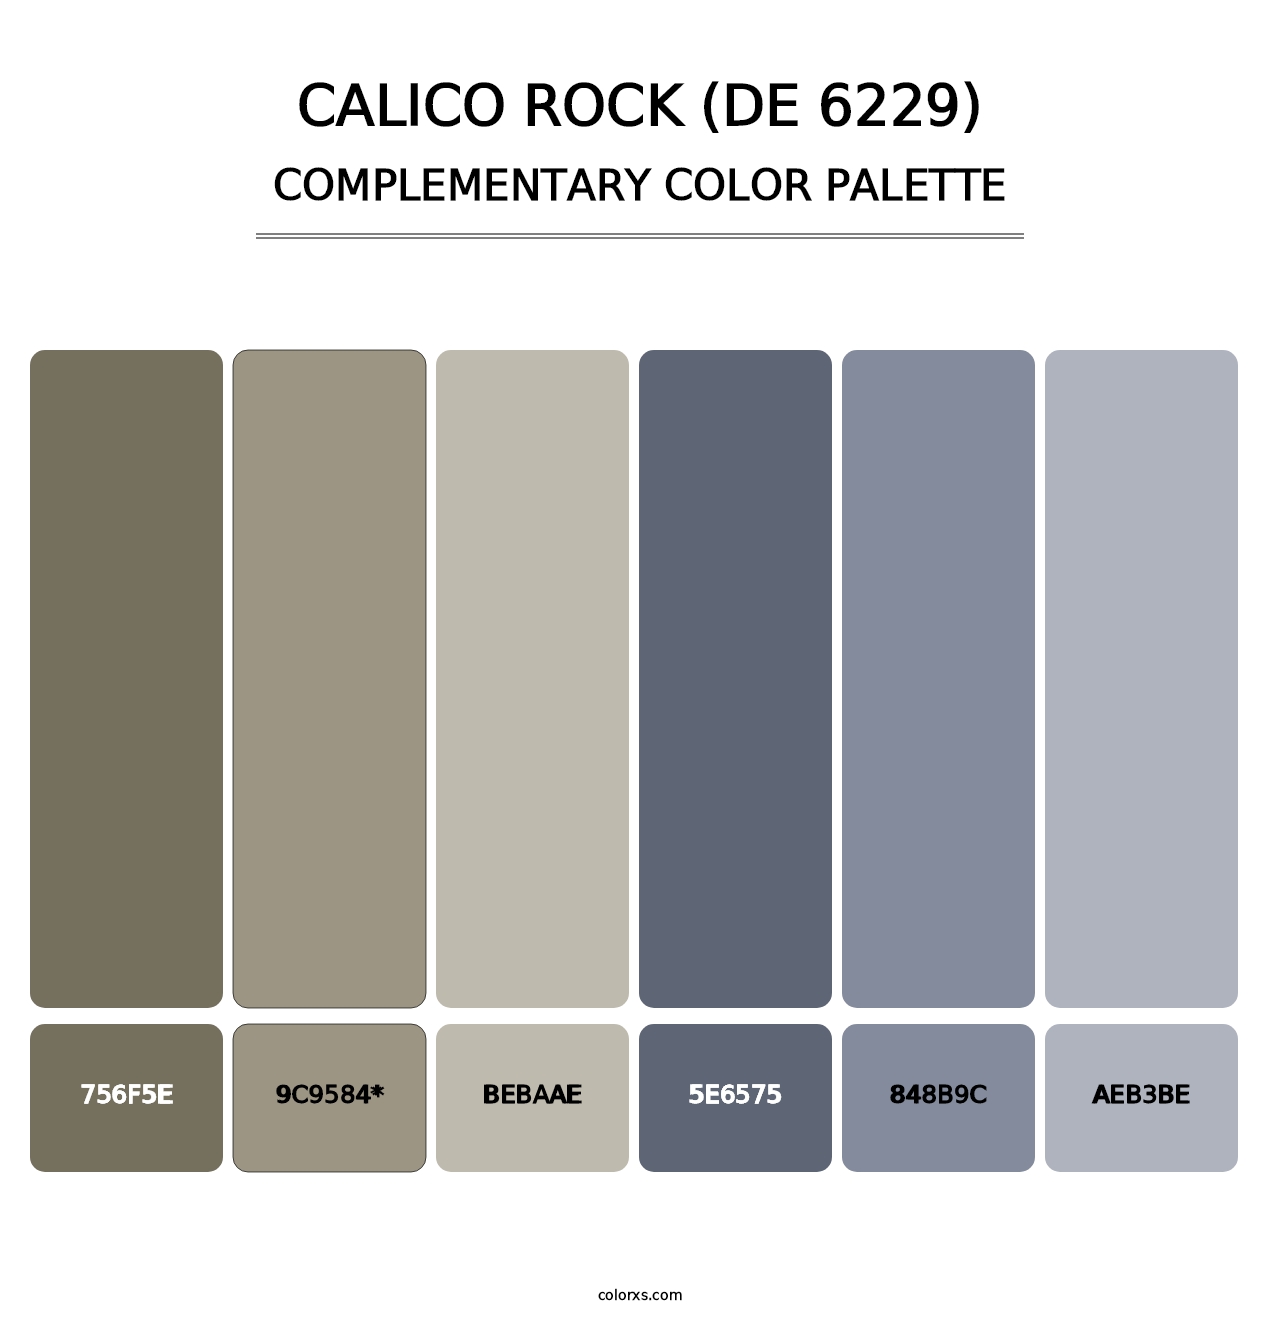 Calico Rock (DE 6229) - Complementary Color Palette